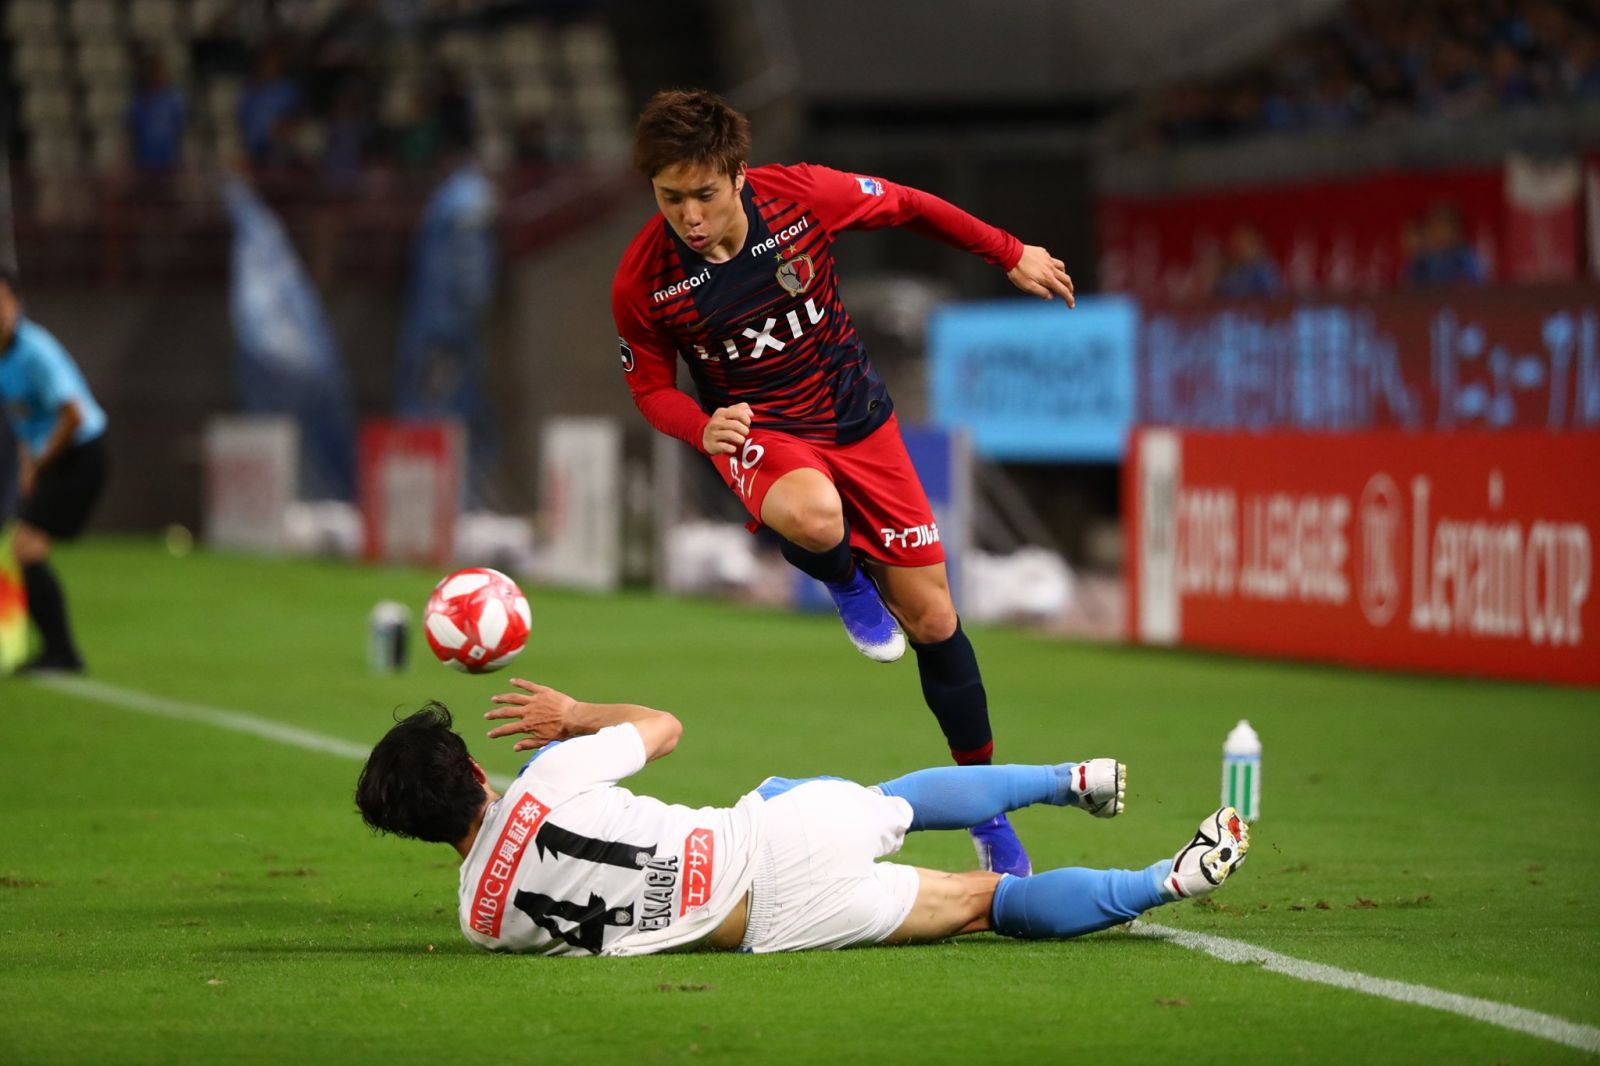 Kashima Antlers vs Cerezo Osaka – Nhận định kèo bóng đá 17h00 26/05/2021 – VĐQG Nhật Bản